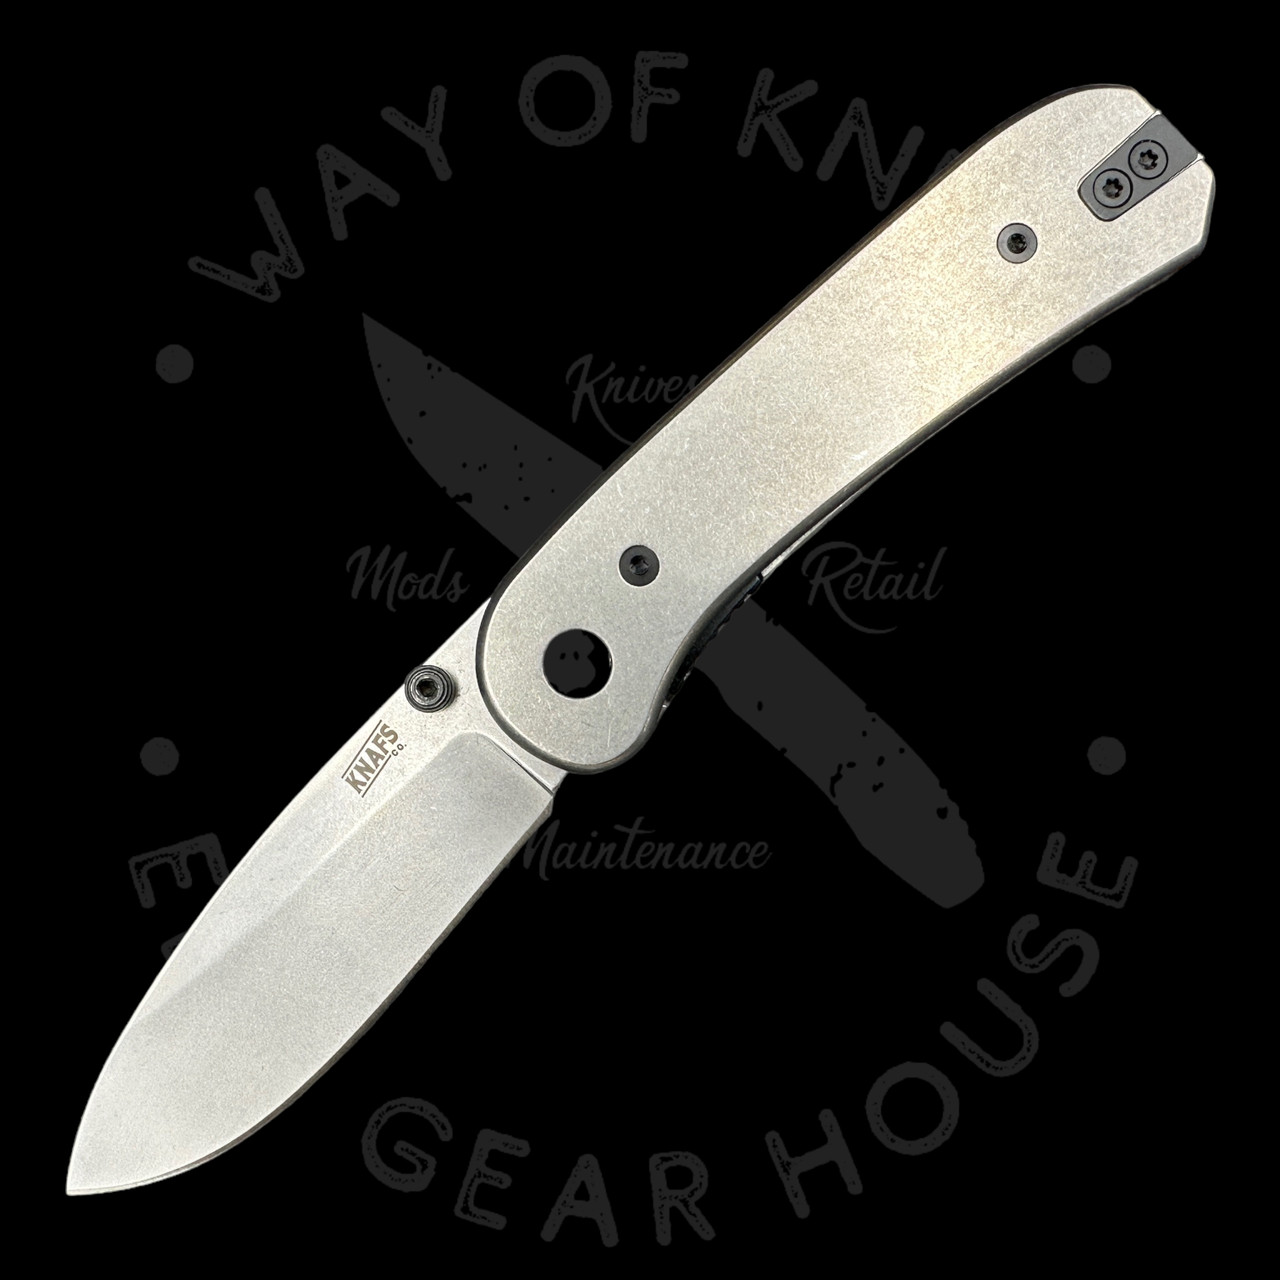 unique scales — Feder knives